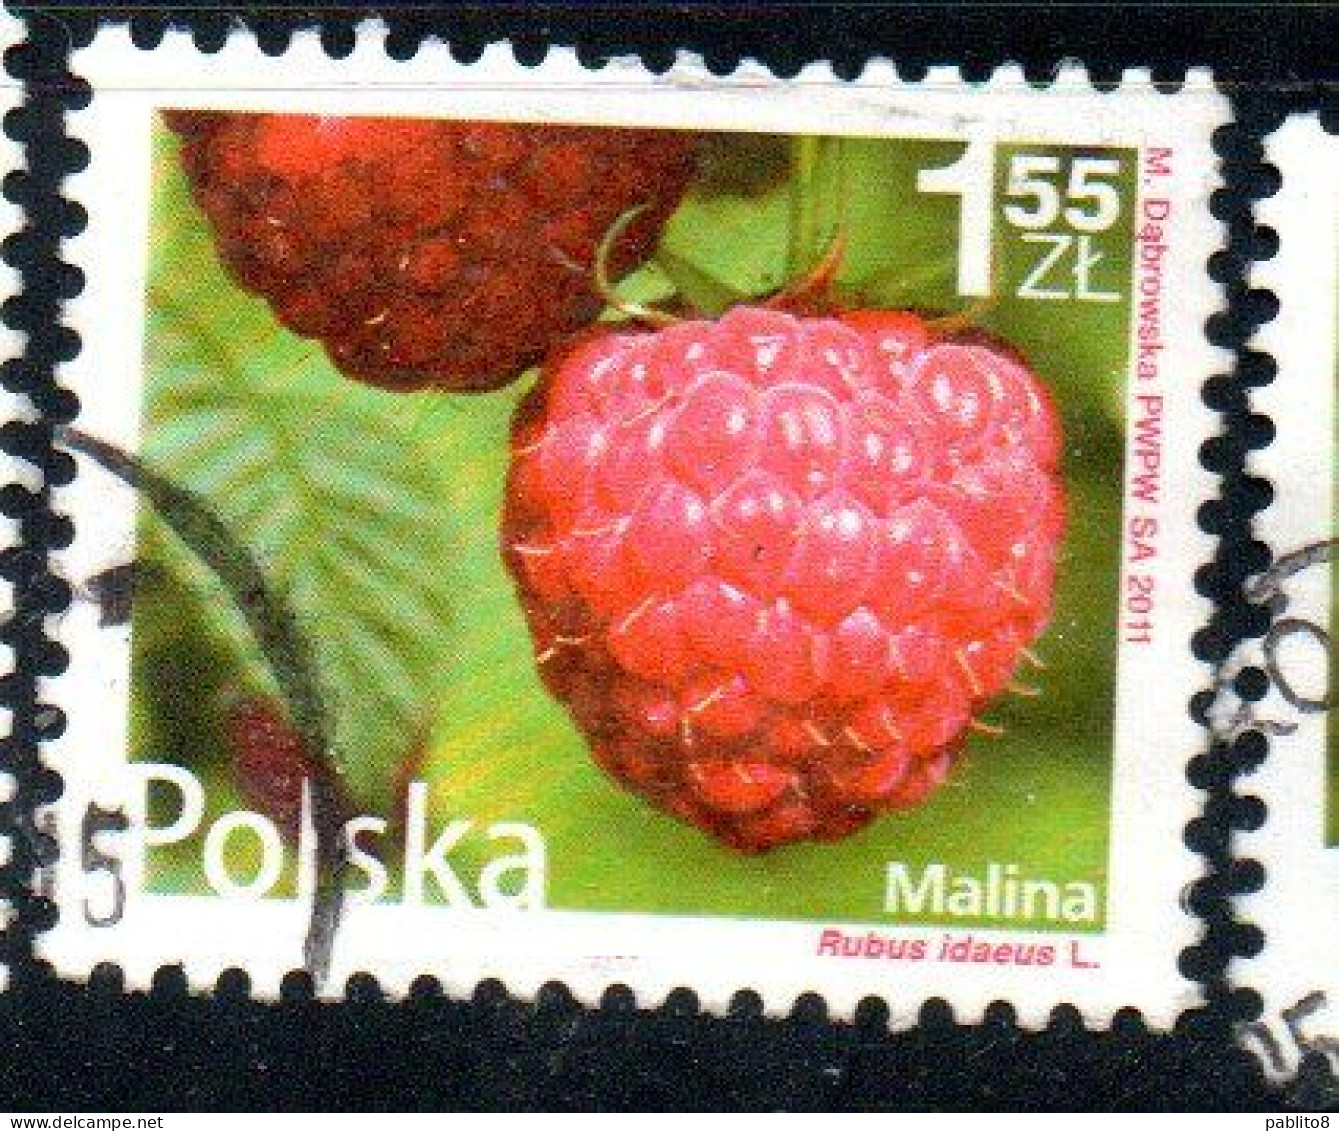 POLONIA POLAND POLSKA 2011 FRUIT AND FLOWERS RUBUS IDAEUS 1.55z USED USATO OBLITERE' - Usados